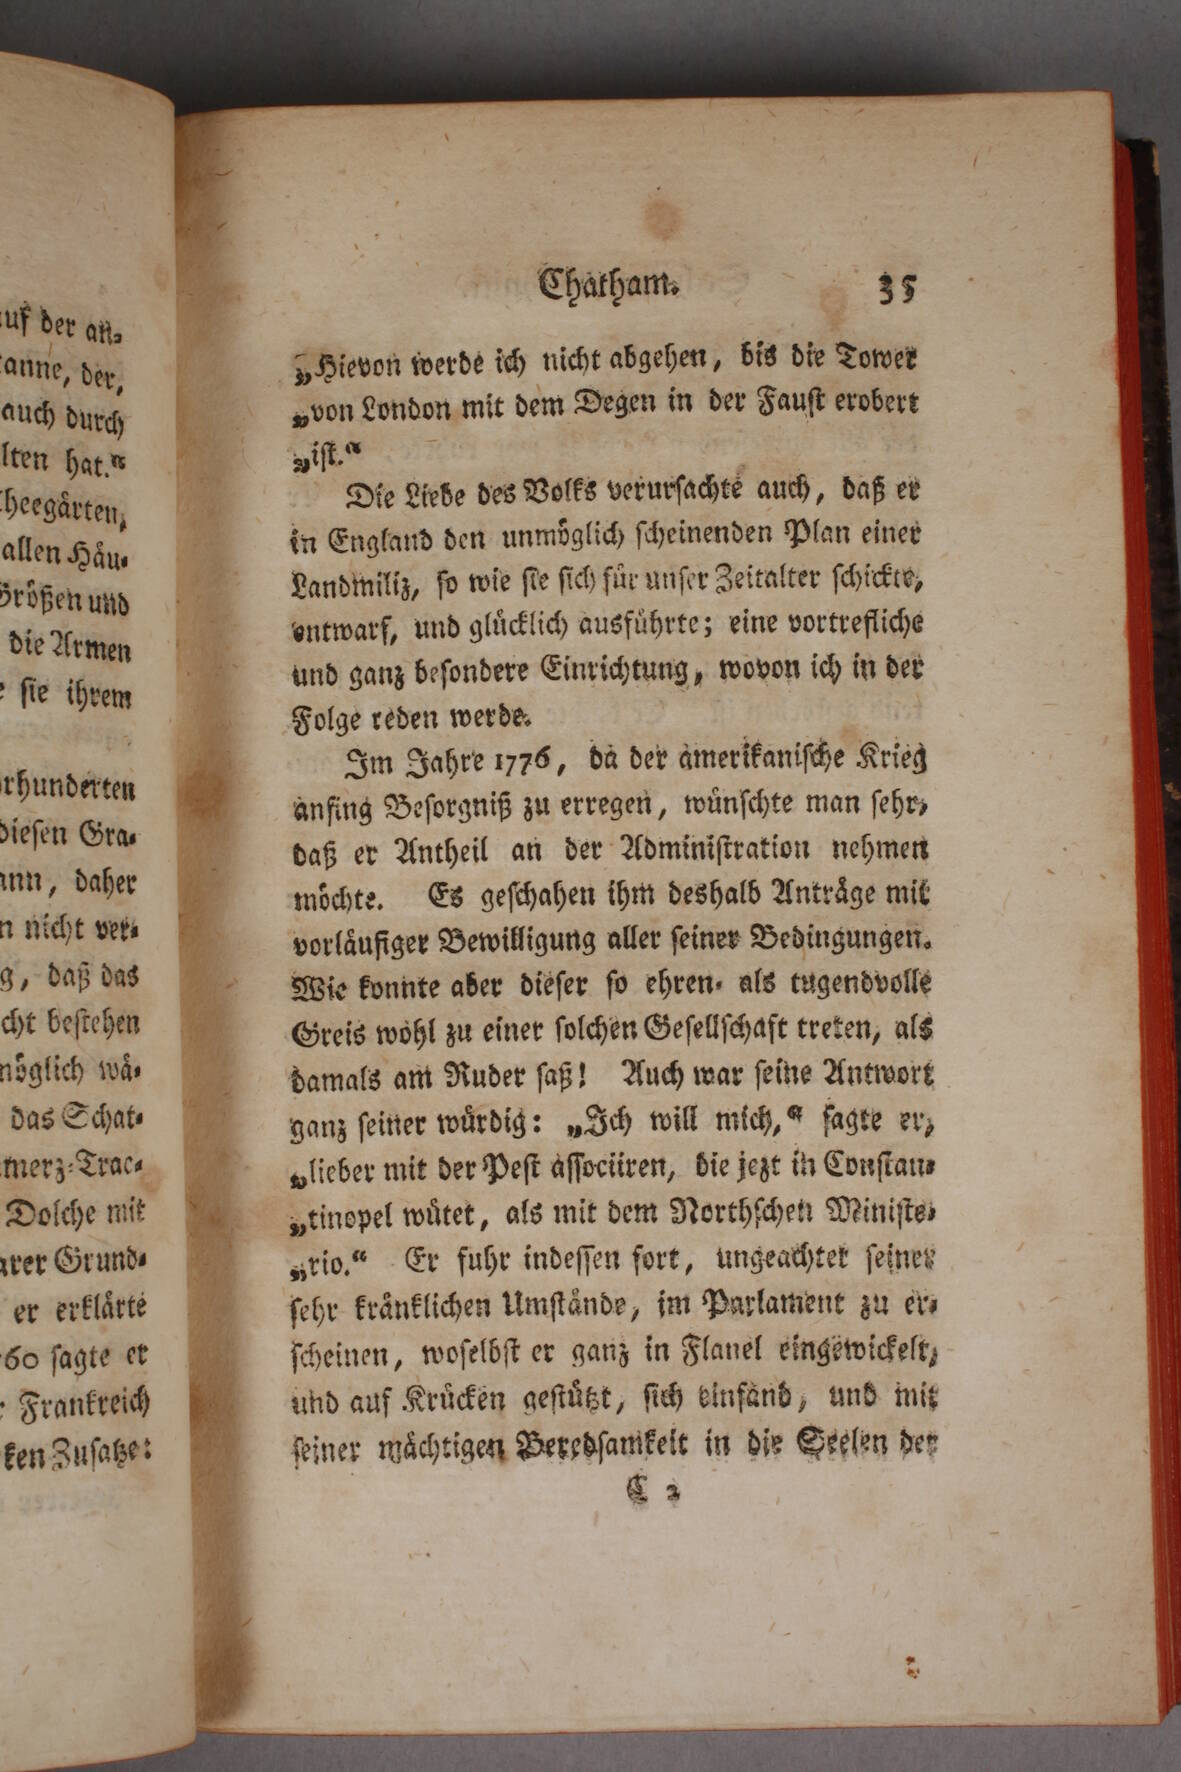 England und Italienvon J. W. Archenholtz, 5 Teile, 2. Aufl., Leipzig im Verlag der Dykischen - Image 4 of 4